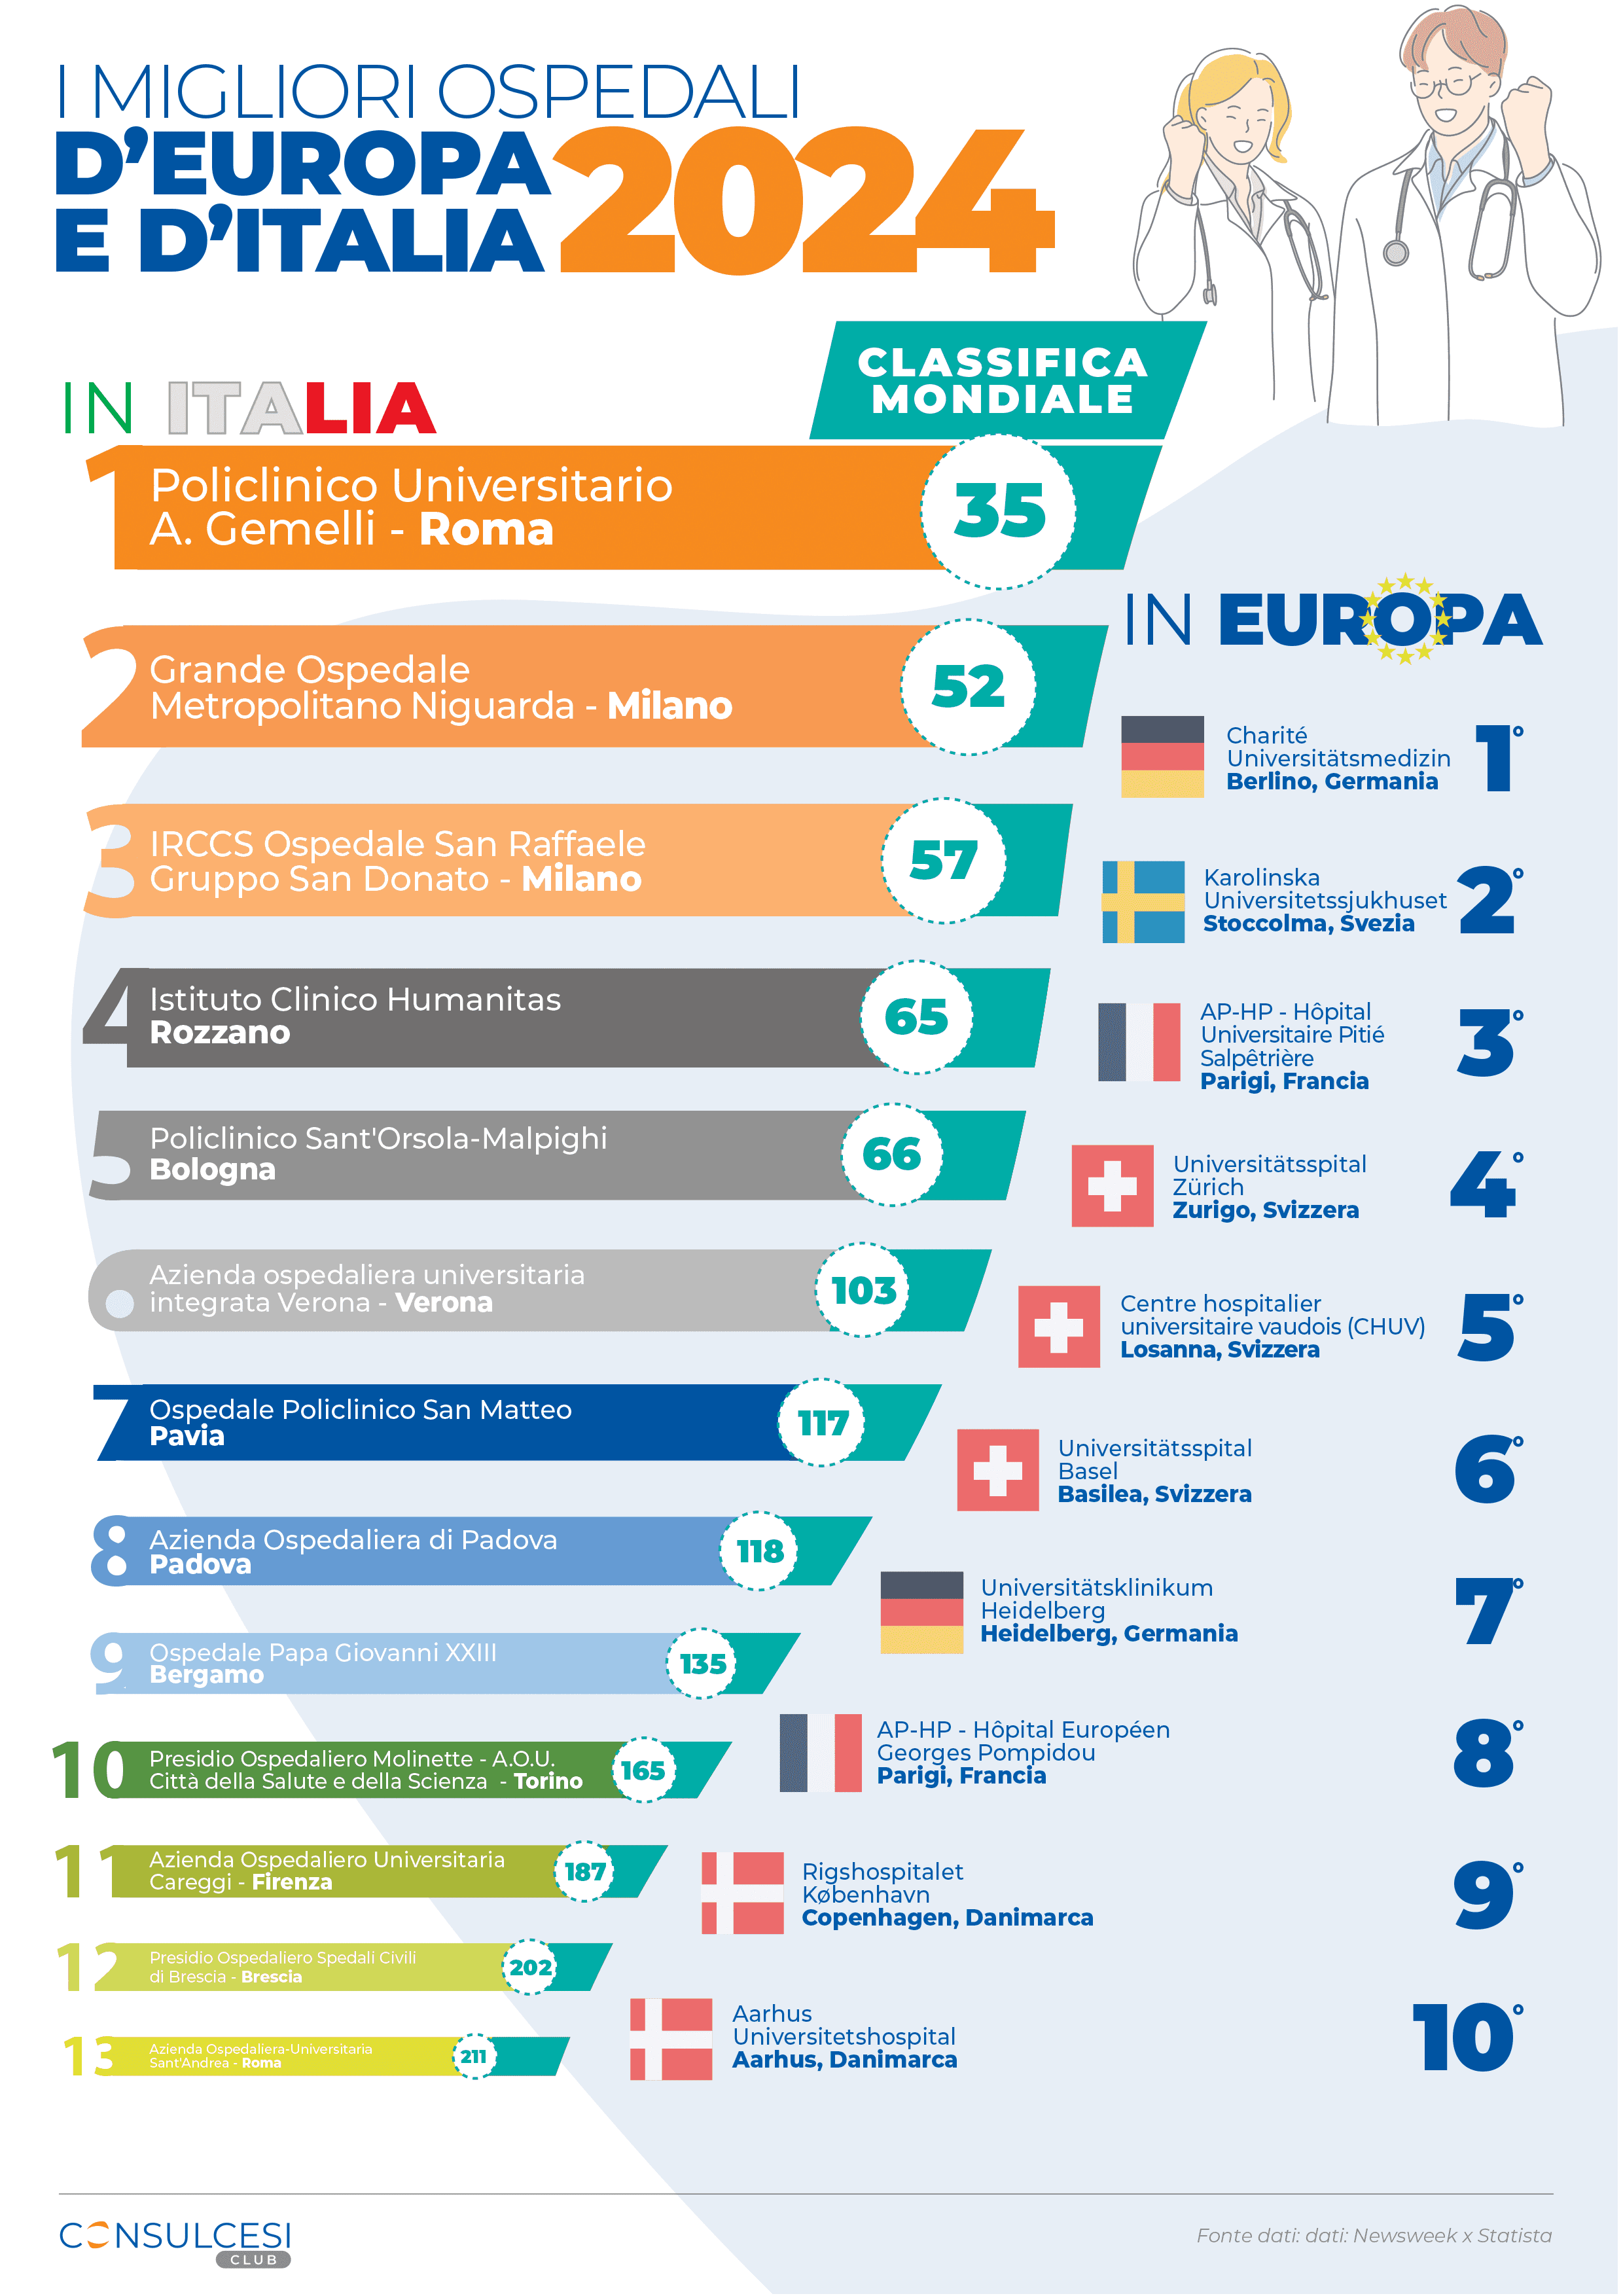 I migliori ospedali d'Italia e d'Europa 2024